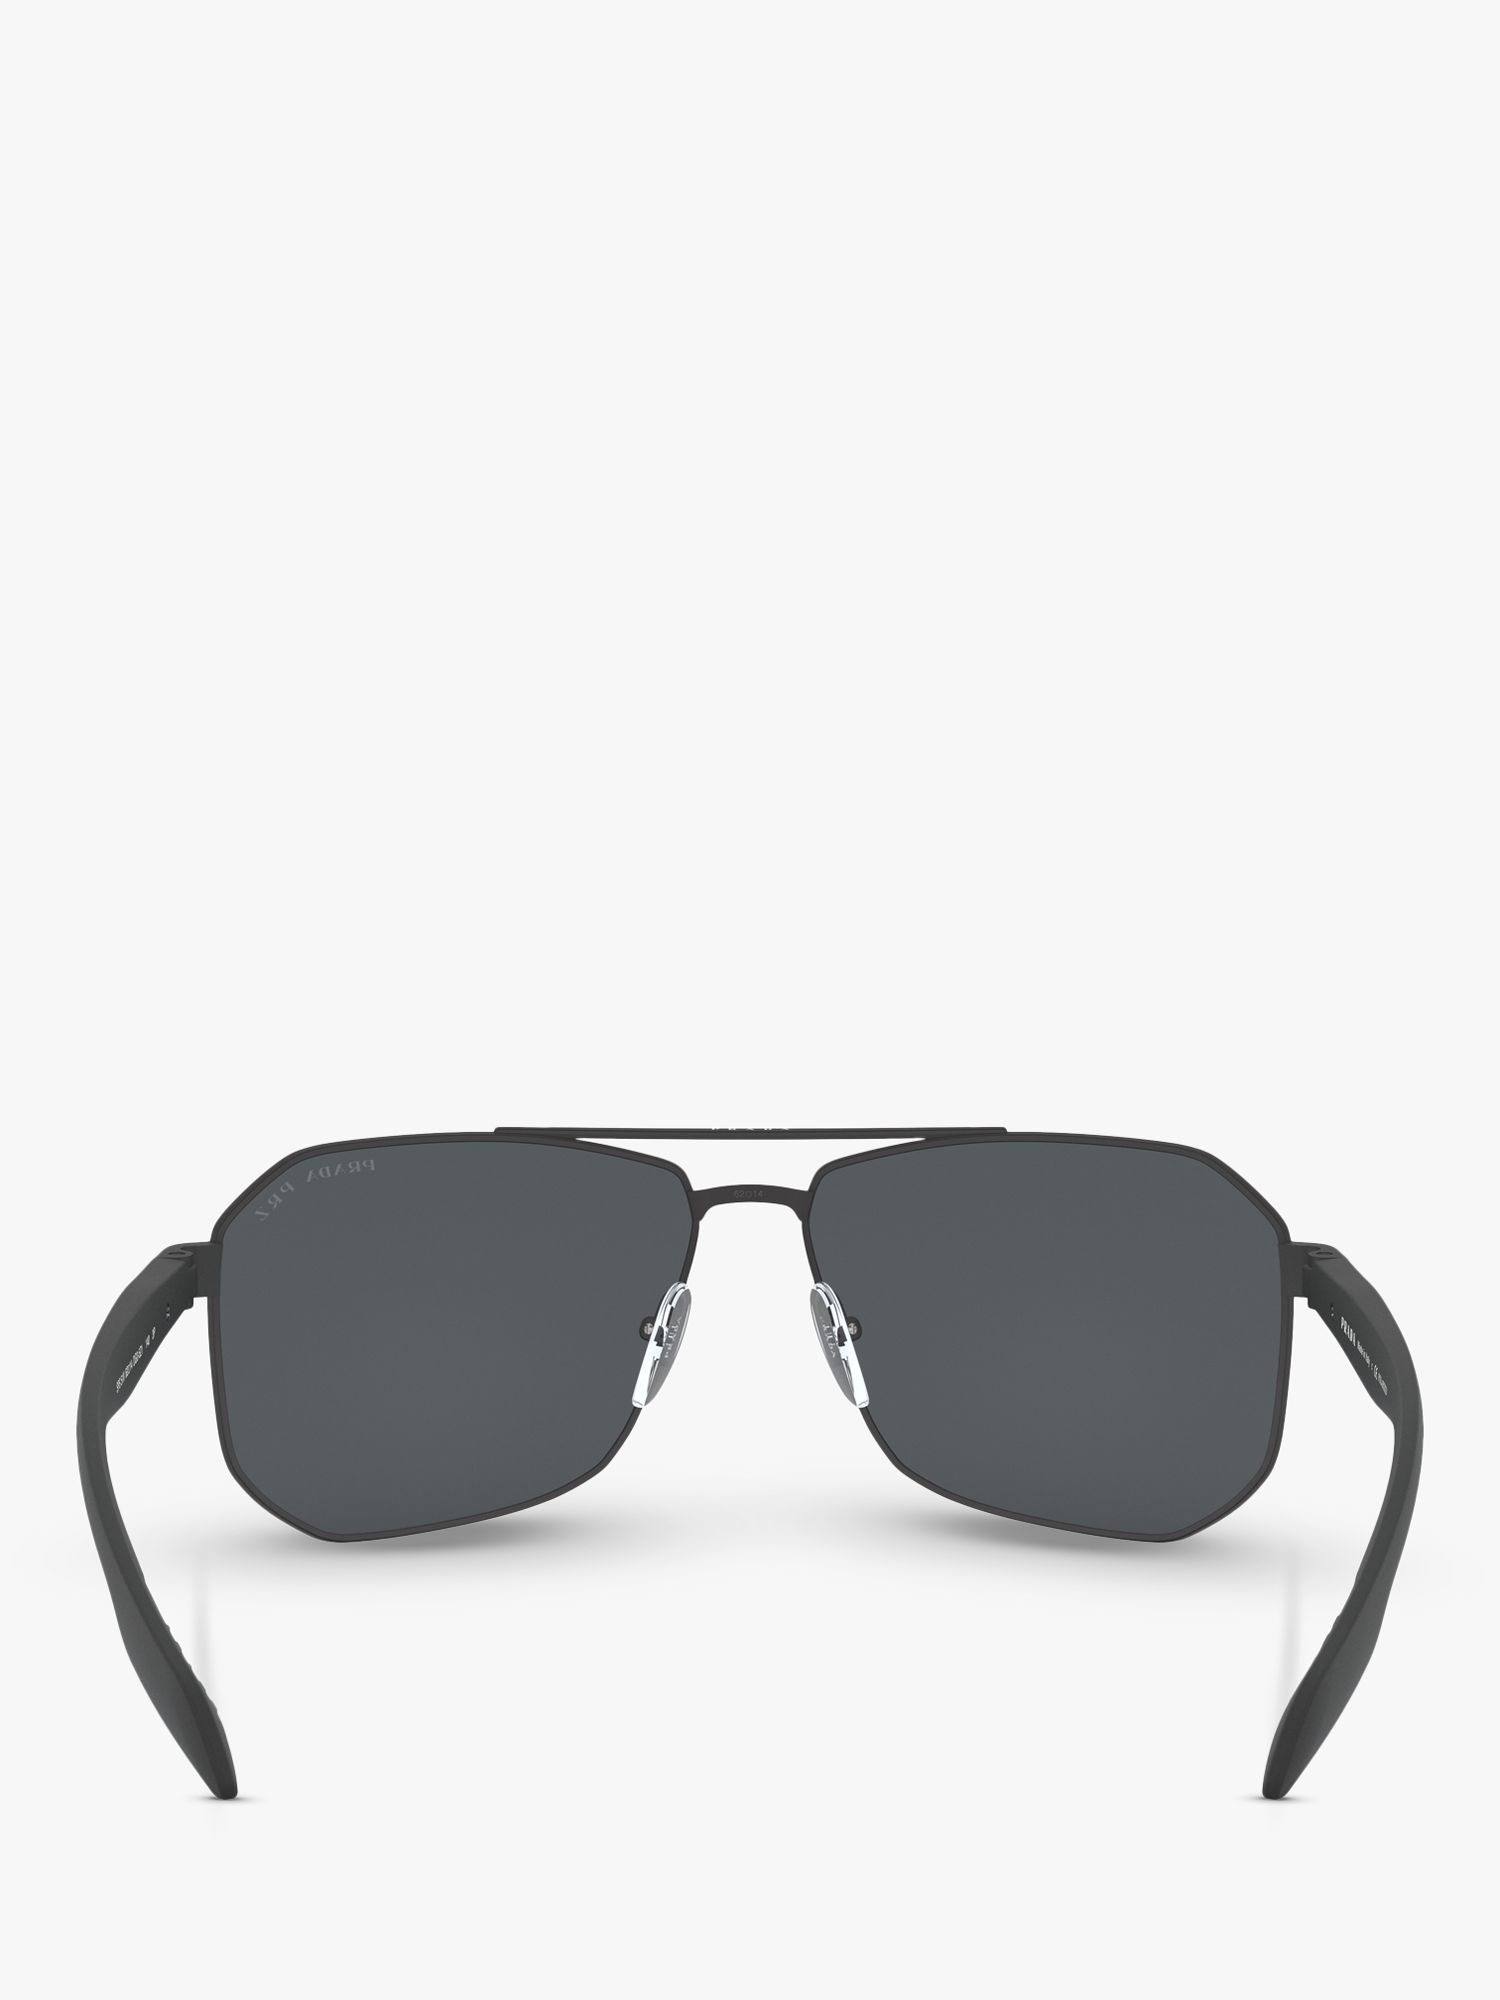 Prada Linea Rossa PS 51VS Men's Polarised Rectangular Sunglasses, Black/Grey